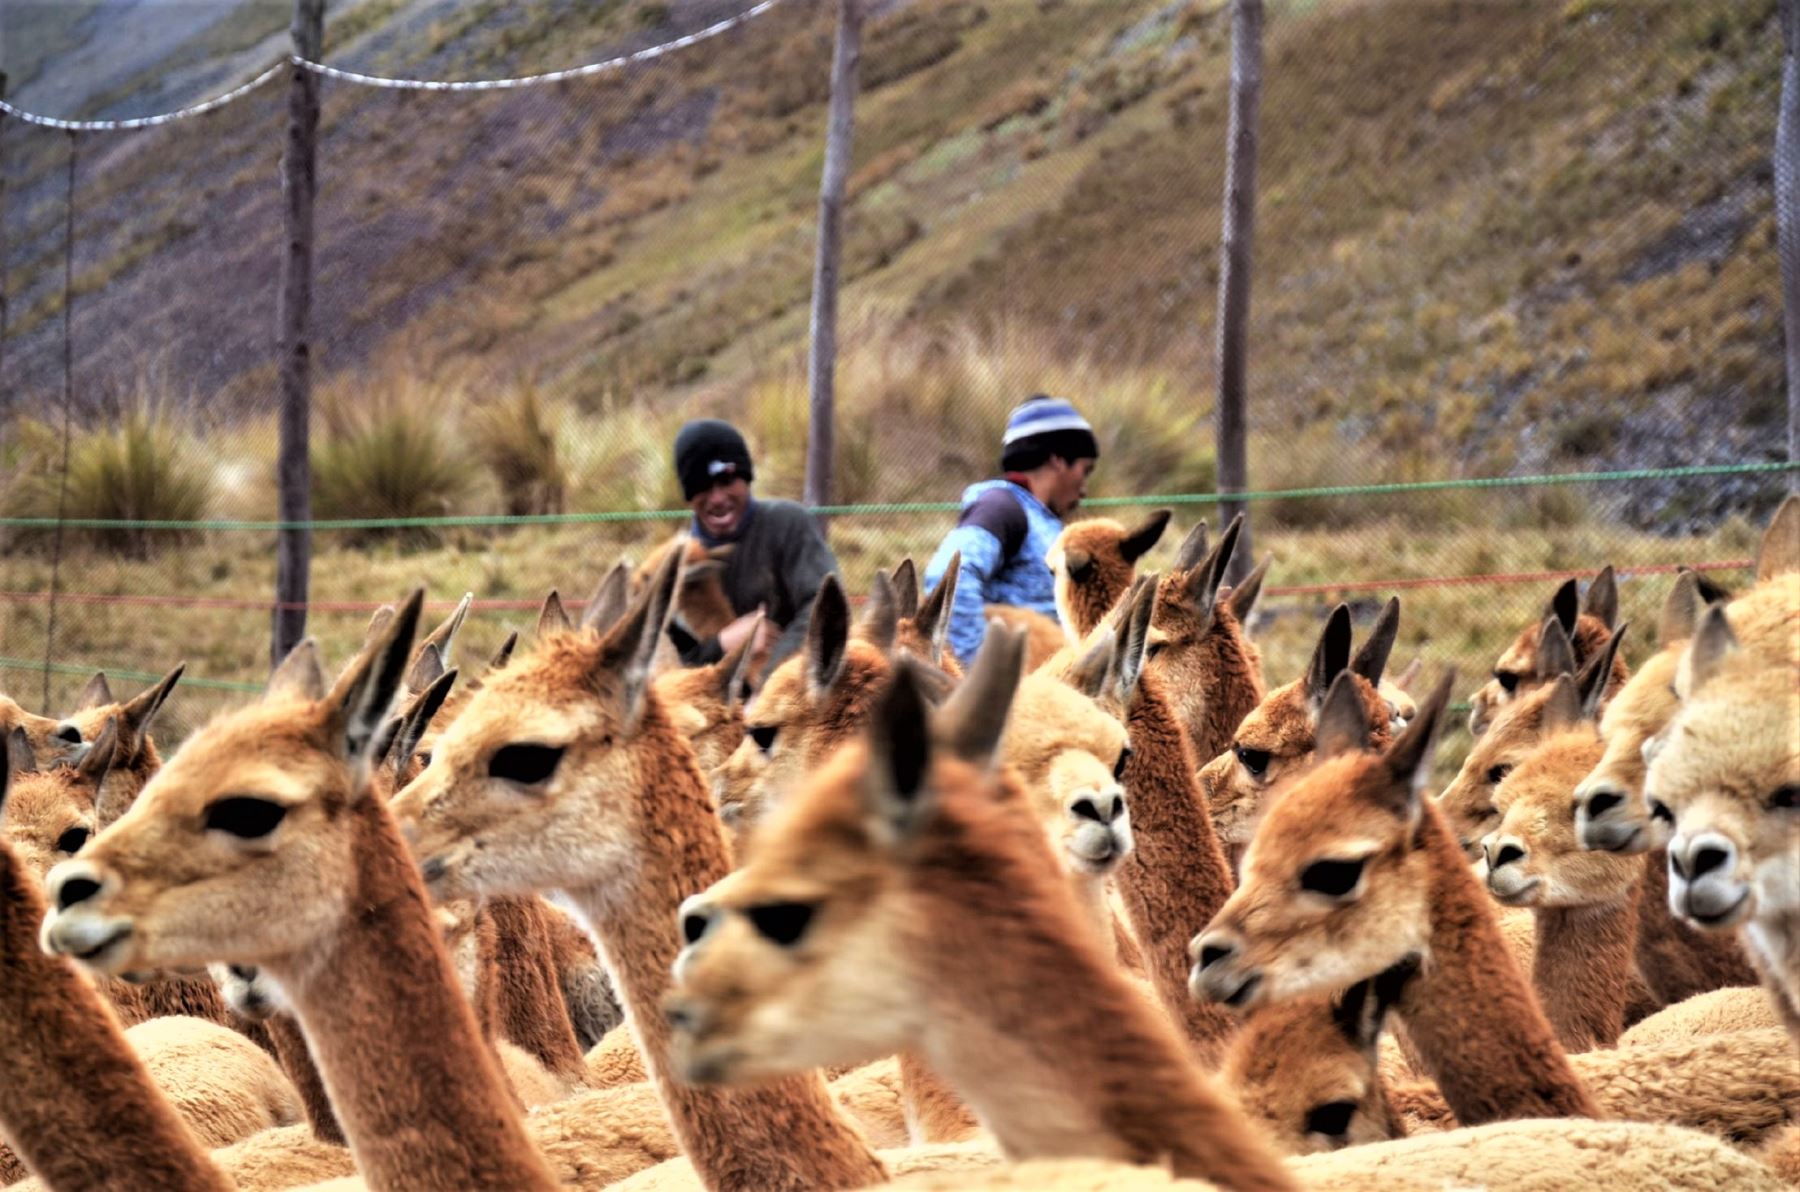 Los visitantes apreciaron a las vicuñas, especie emblemática del país, las cuales ingresaron a los embudos de mallas donde se realizó la esquila.